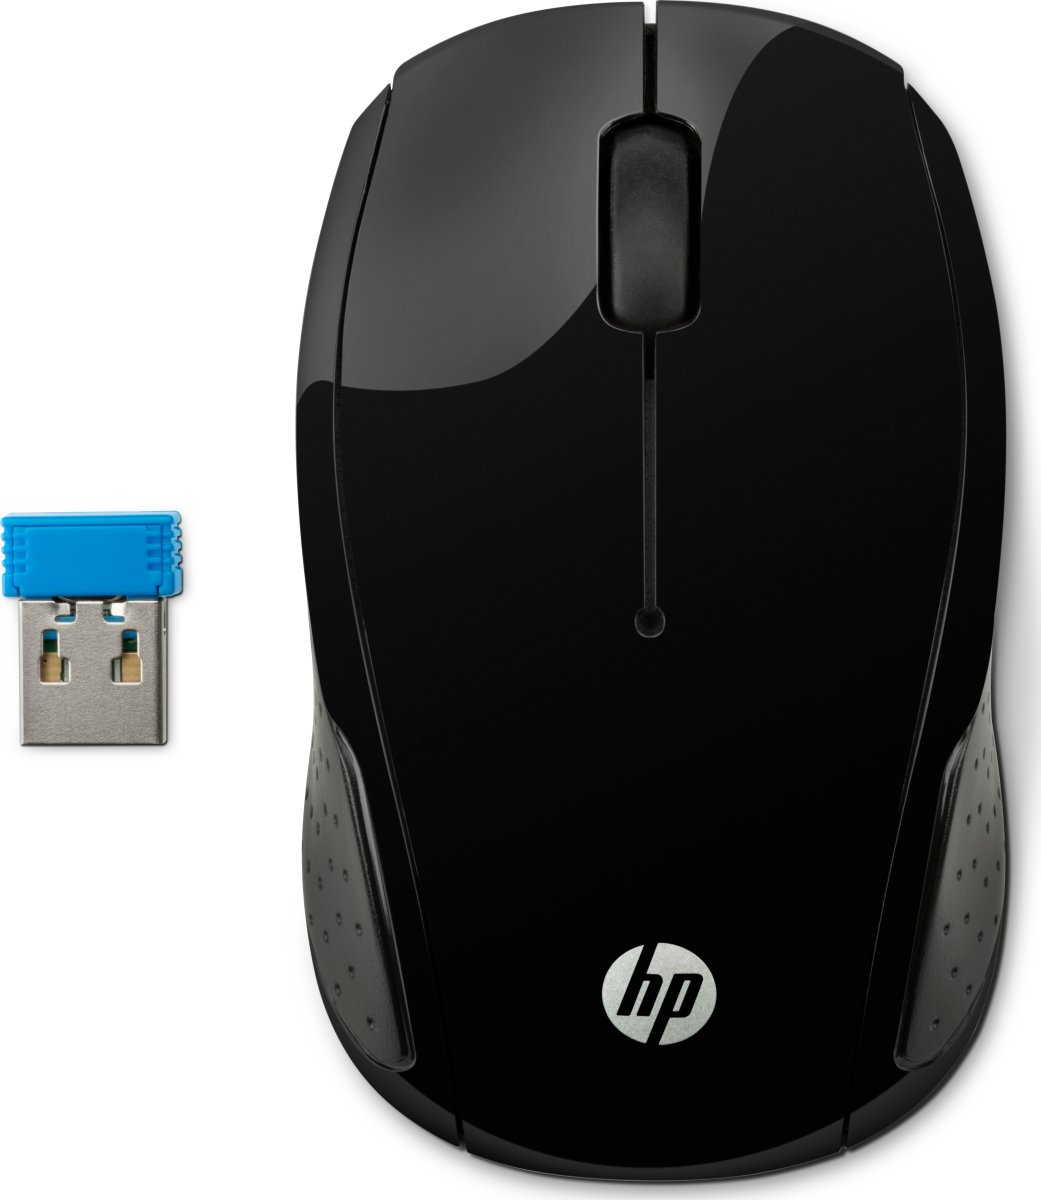 HP 200 trådløs mus, sort